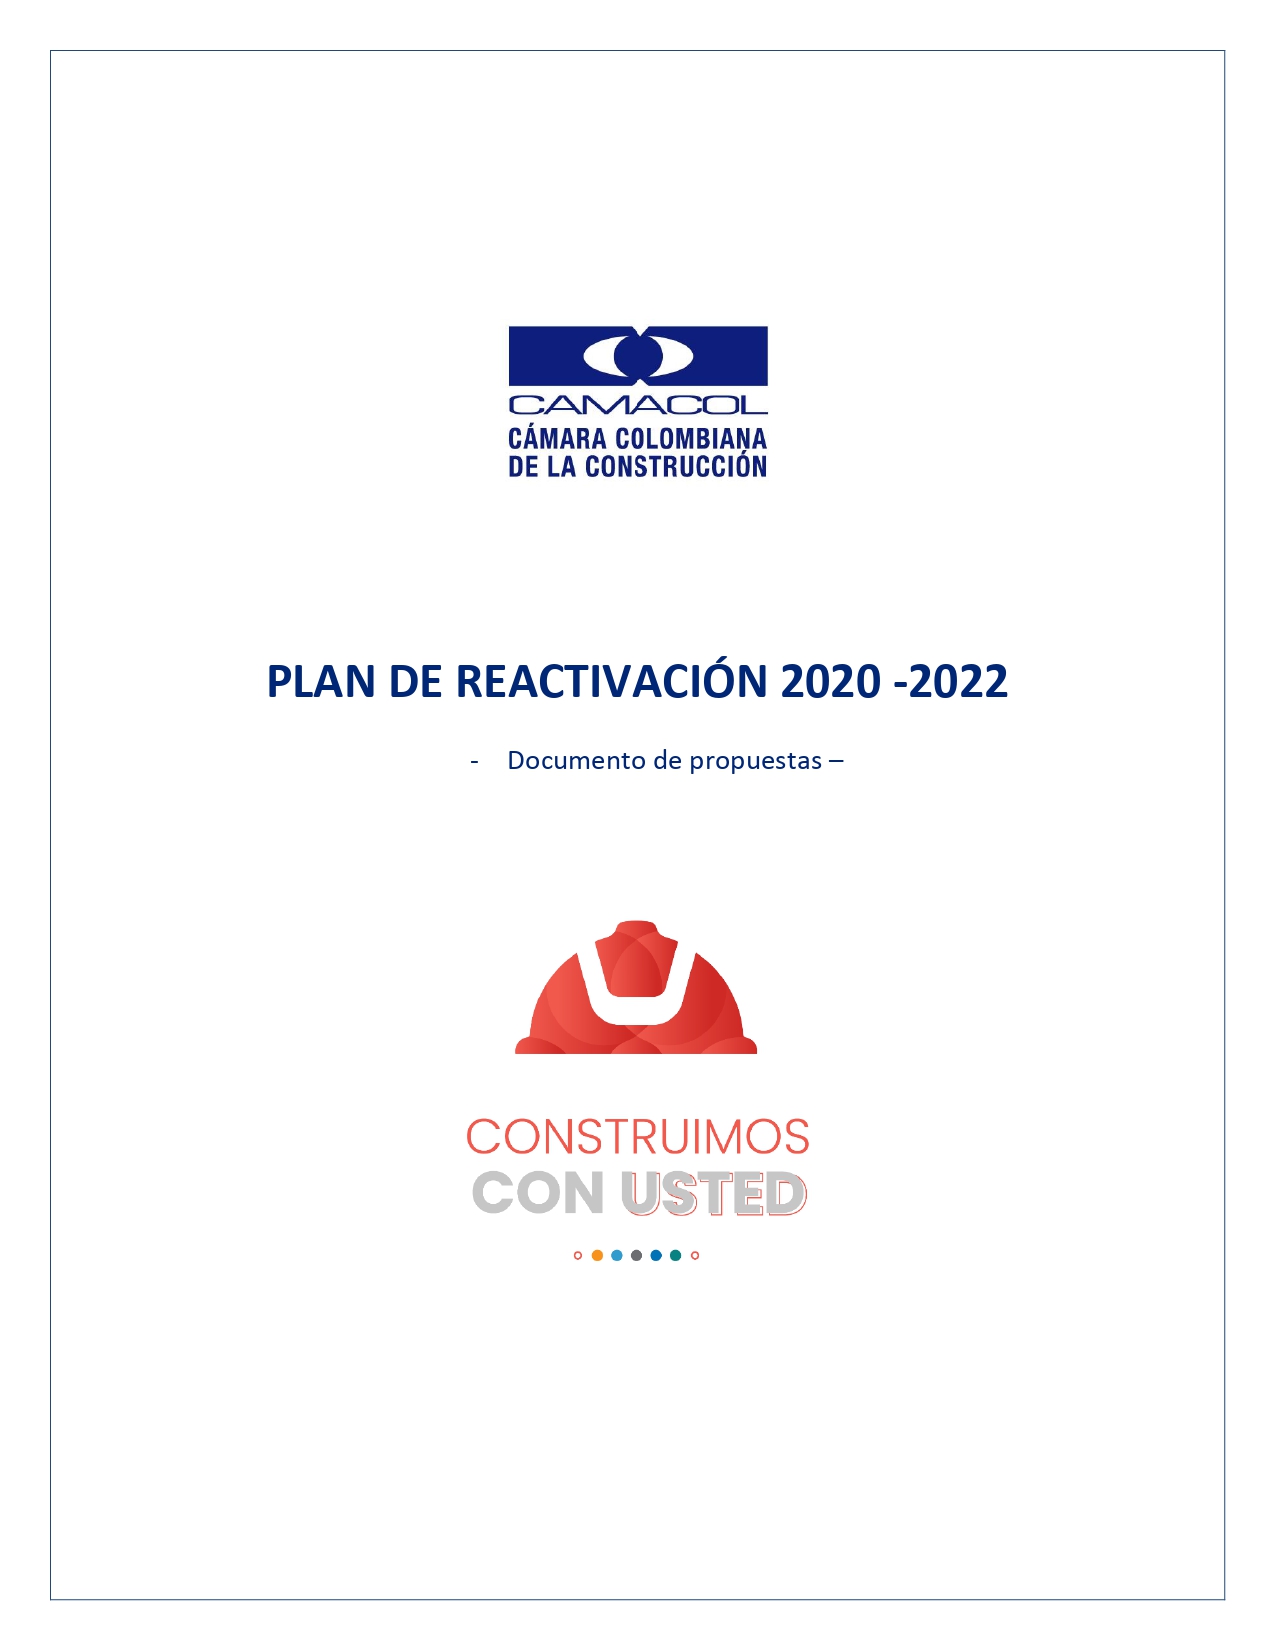 plan de reactivación COVID 19, vivienda, construcción, constructores, Guillermo Herrera, Camacol